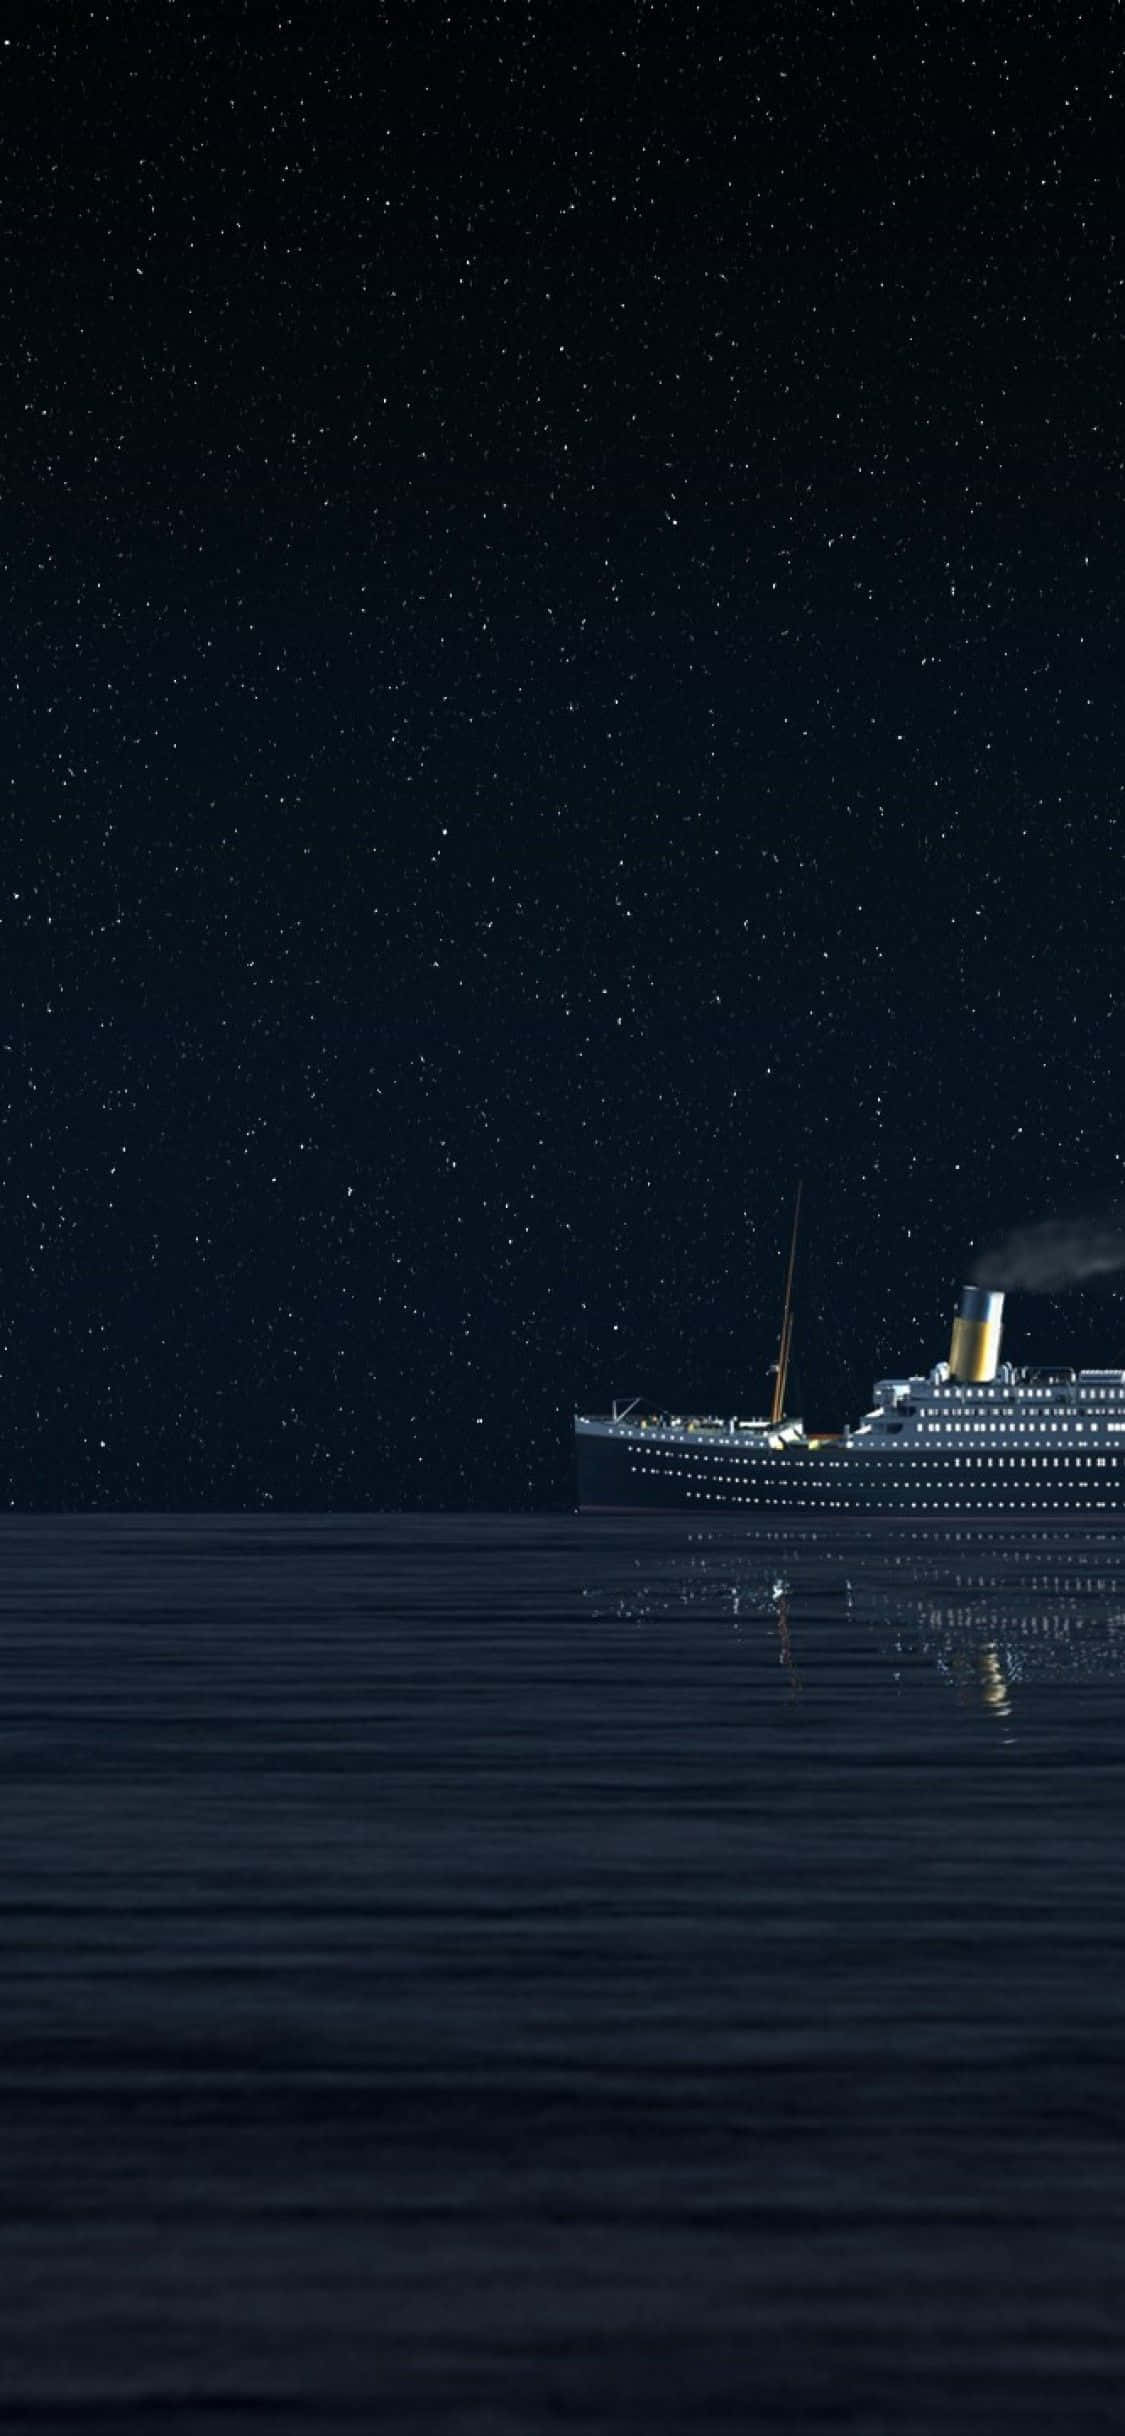 Tidigareför Filmen Titanic Finns En Minnesplakett I Stanley Dock, Liverpool, Storbritannien.